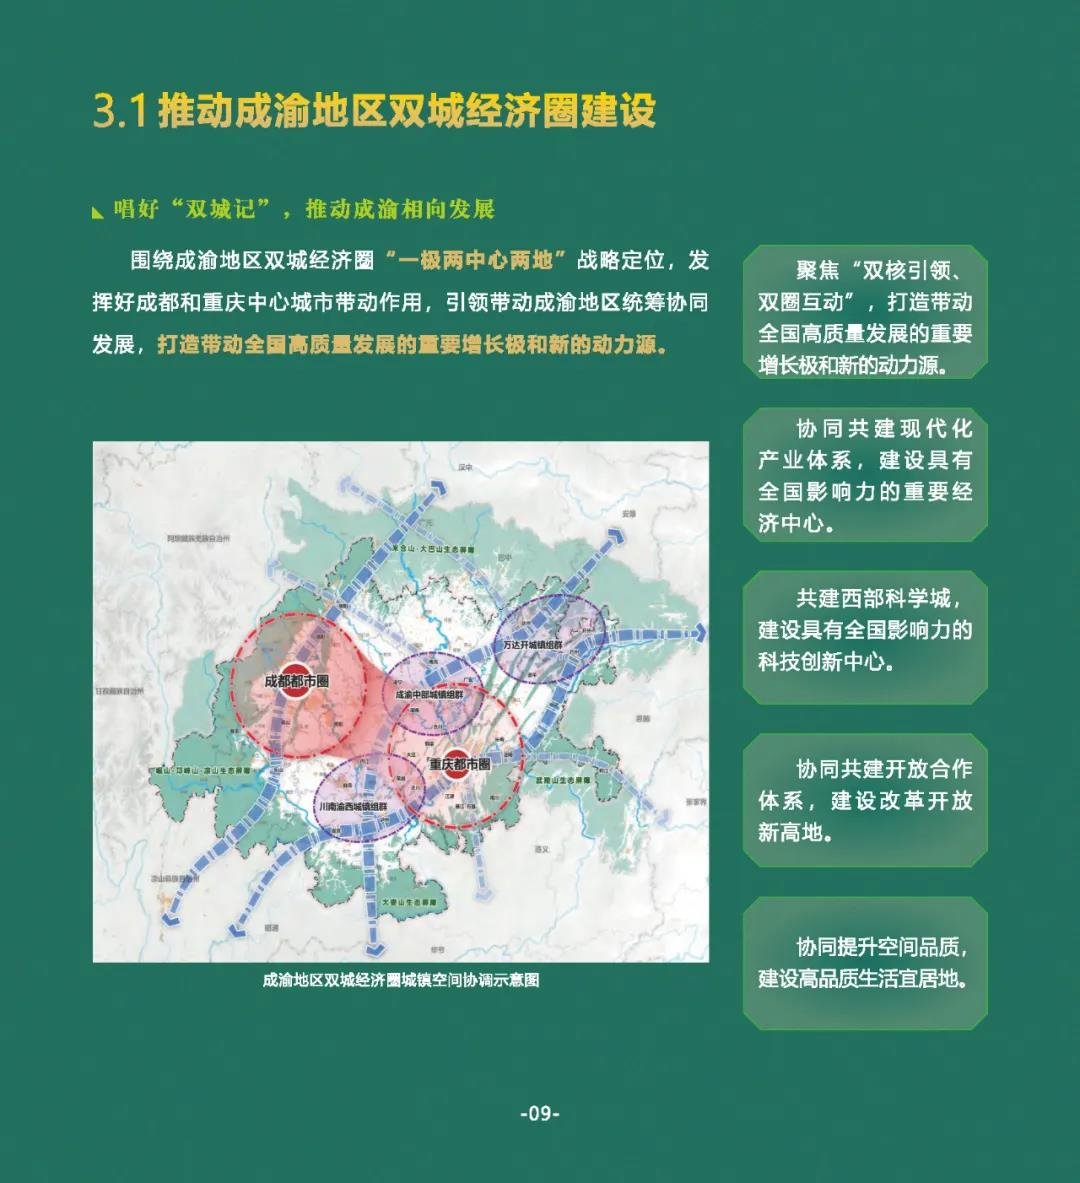 成都市国土空间总体规划（2020-2035年）草案公示